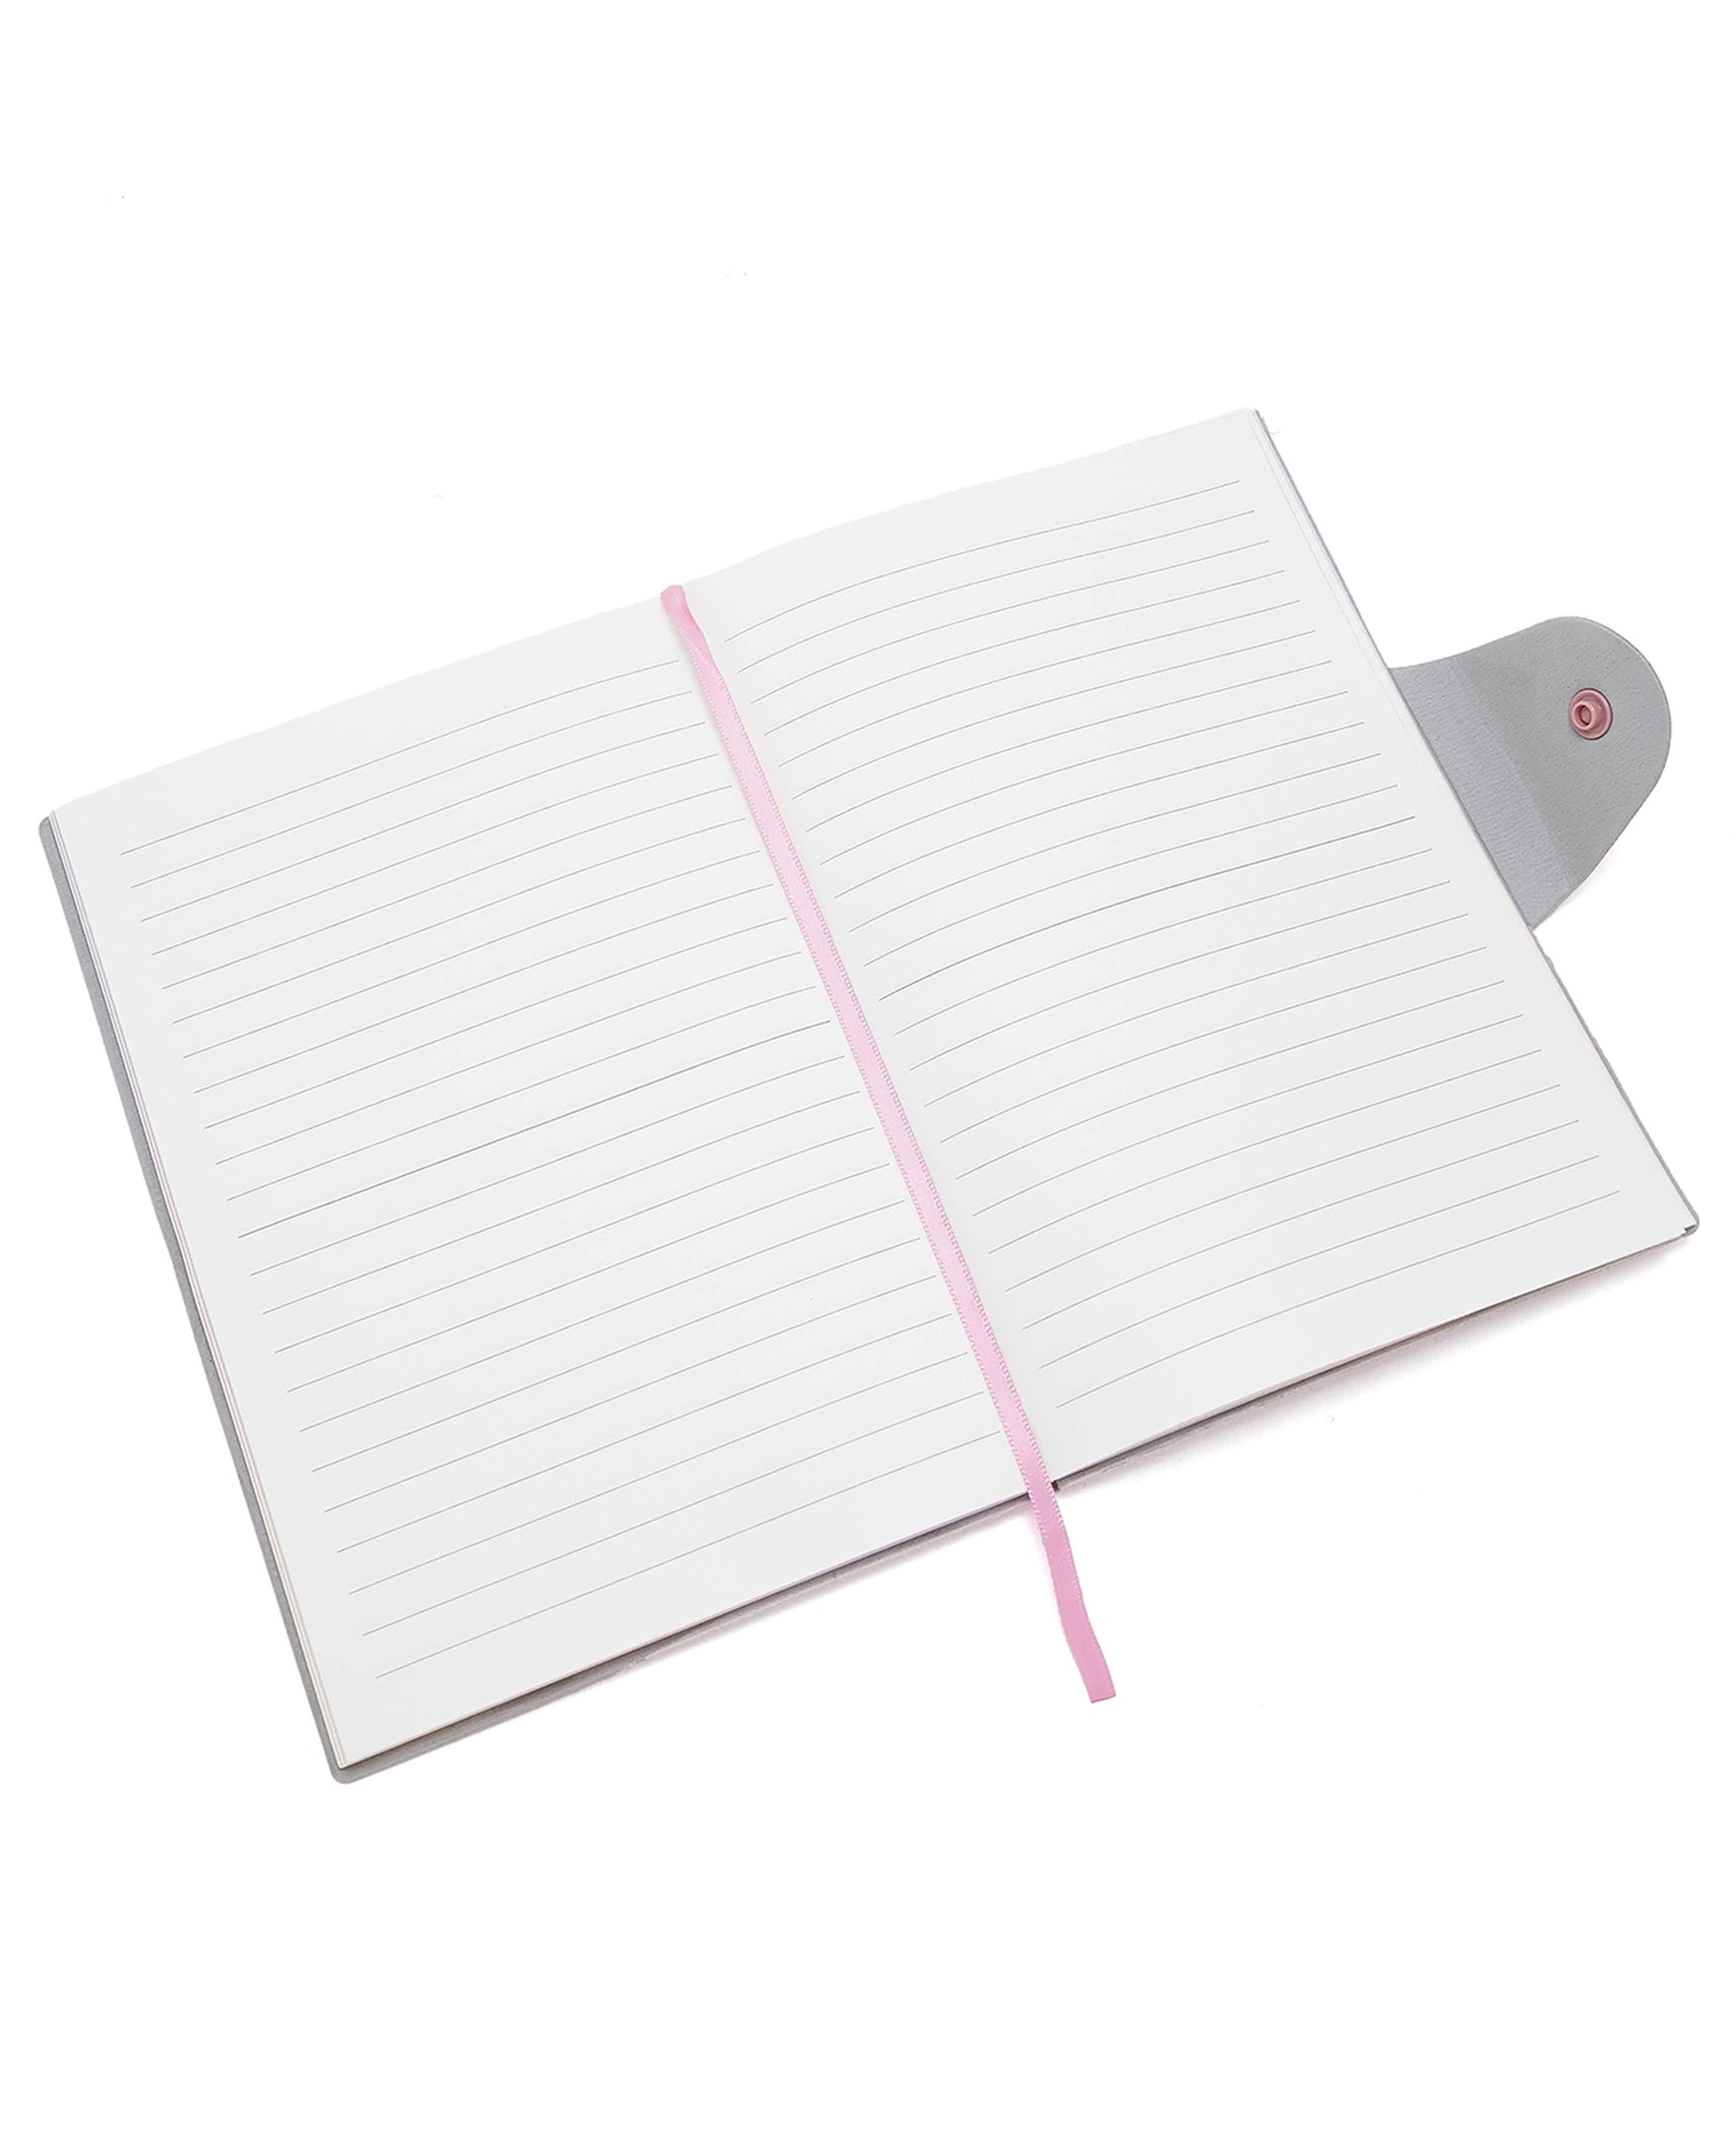 C6 Journal Notebook